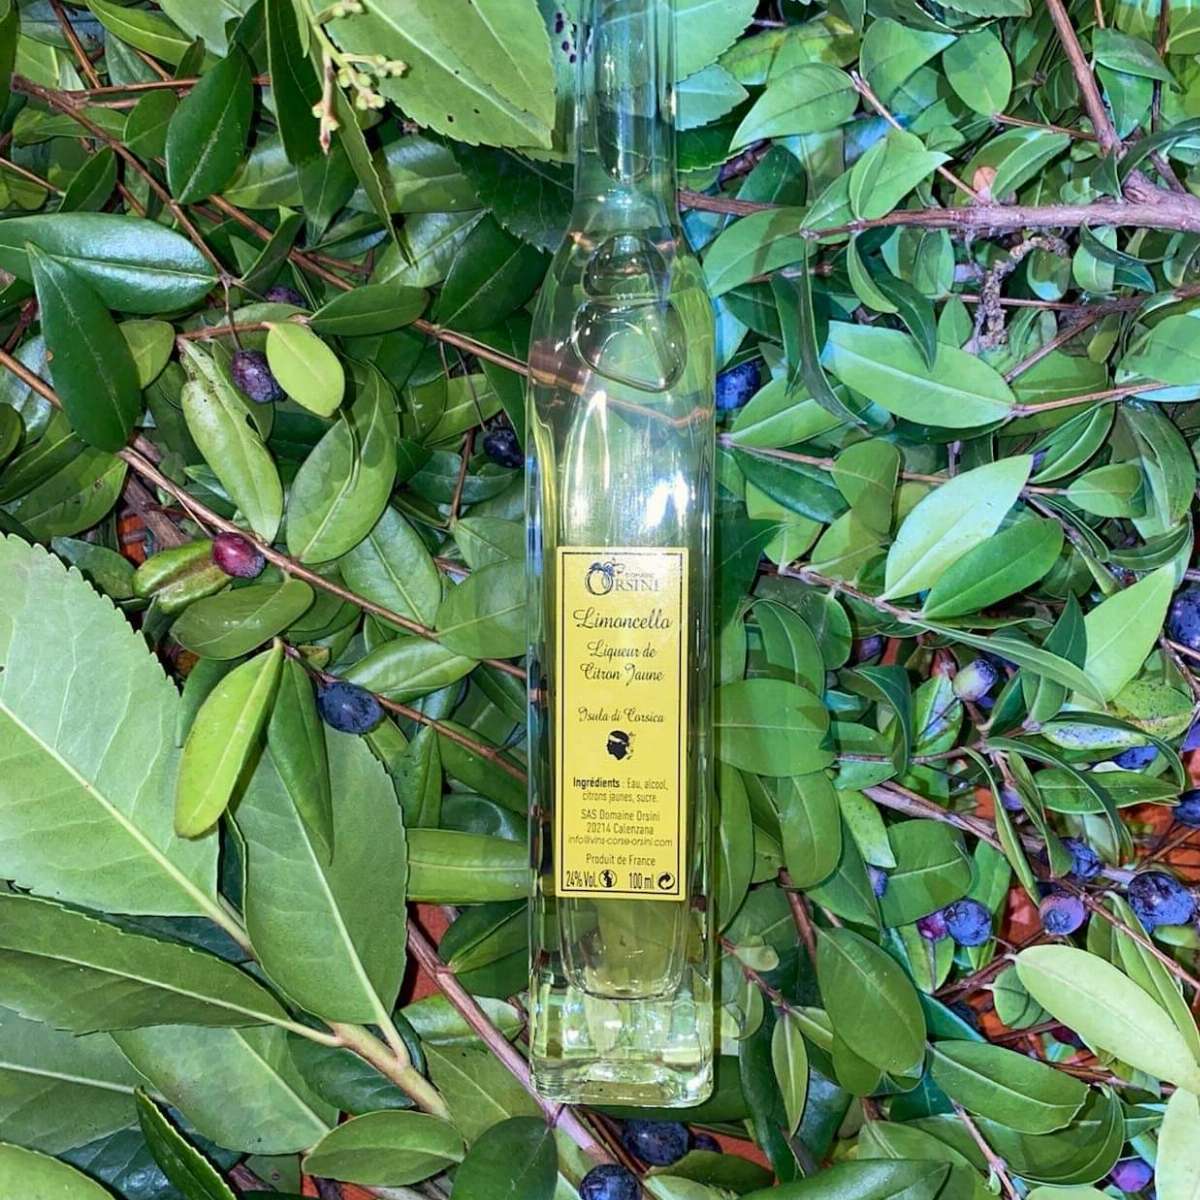 Limoncello - Liqueur de Citron jaune - Domaine Orsini